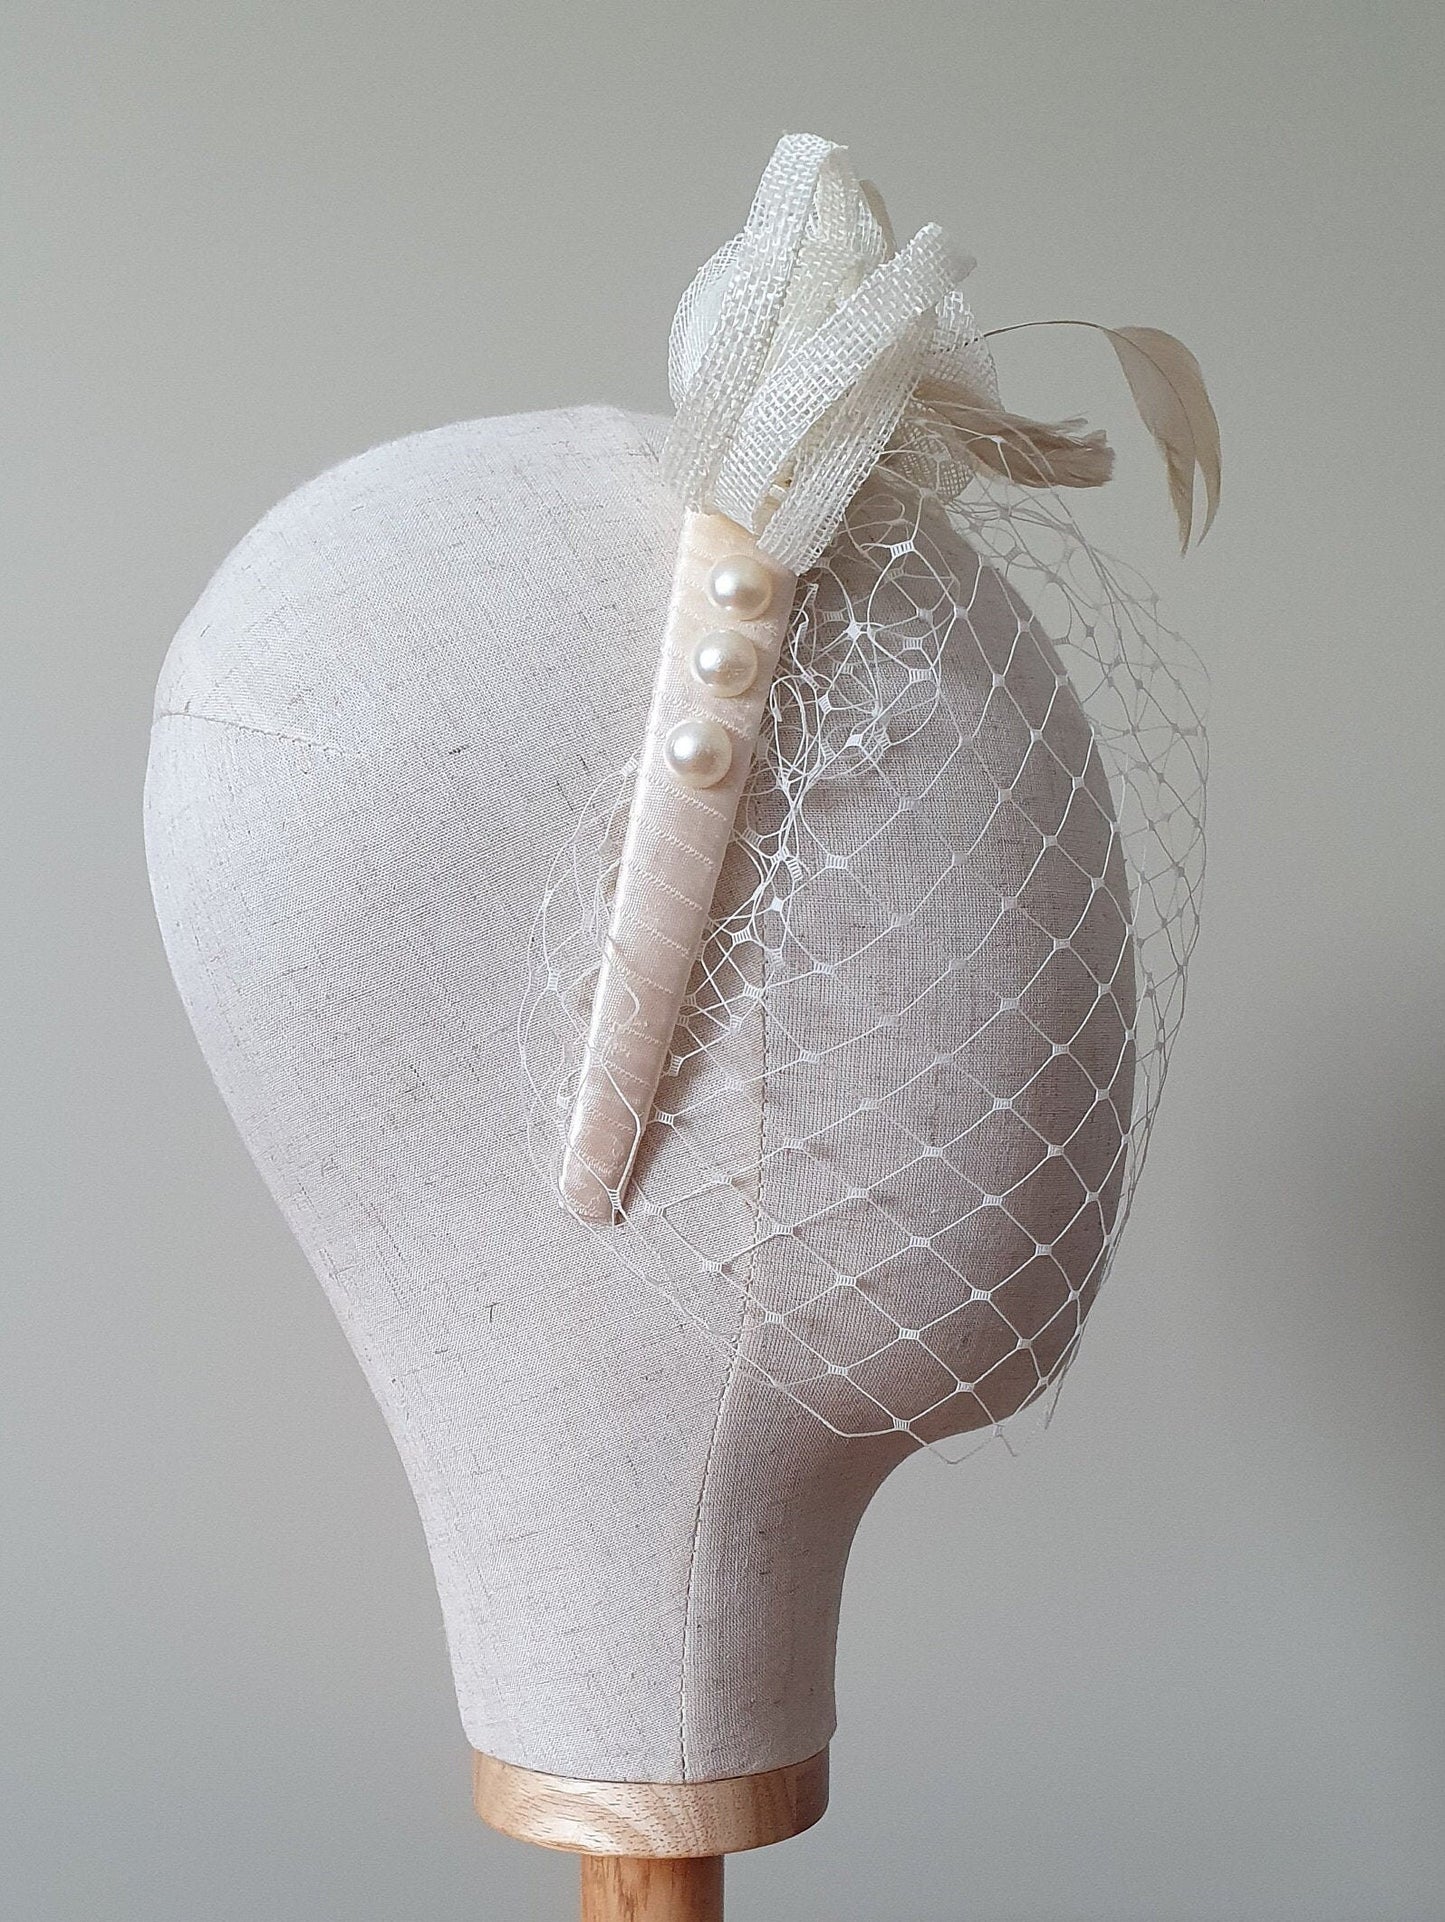 Diadema de sinamay hecha a mano, diadema con velo, tiara nupcial, perfecta para bodas y ocasiones festivas